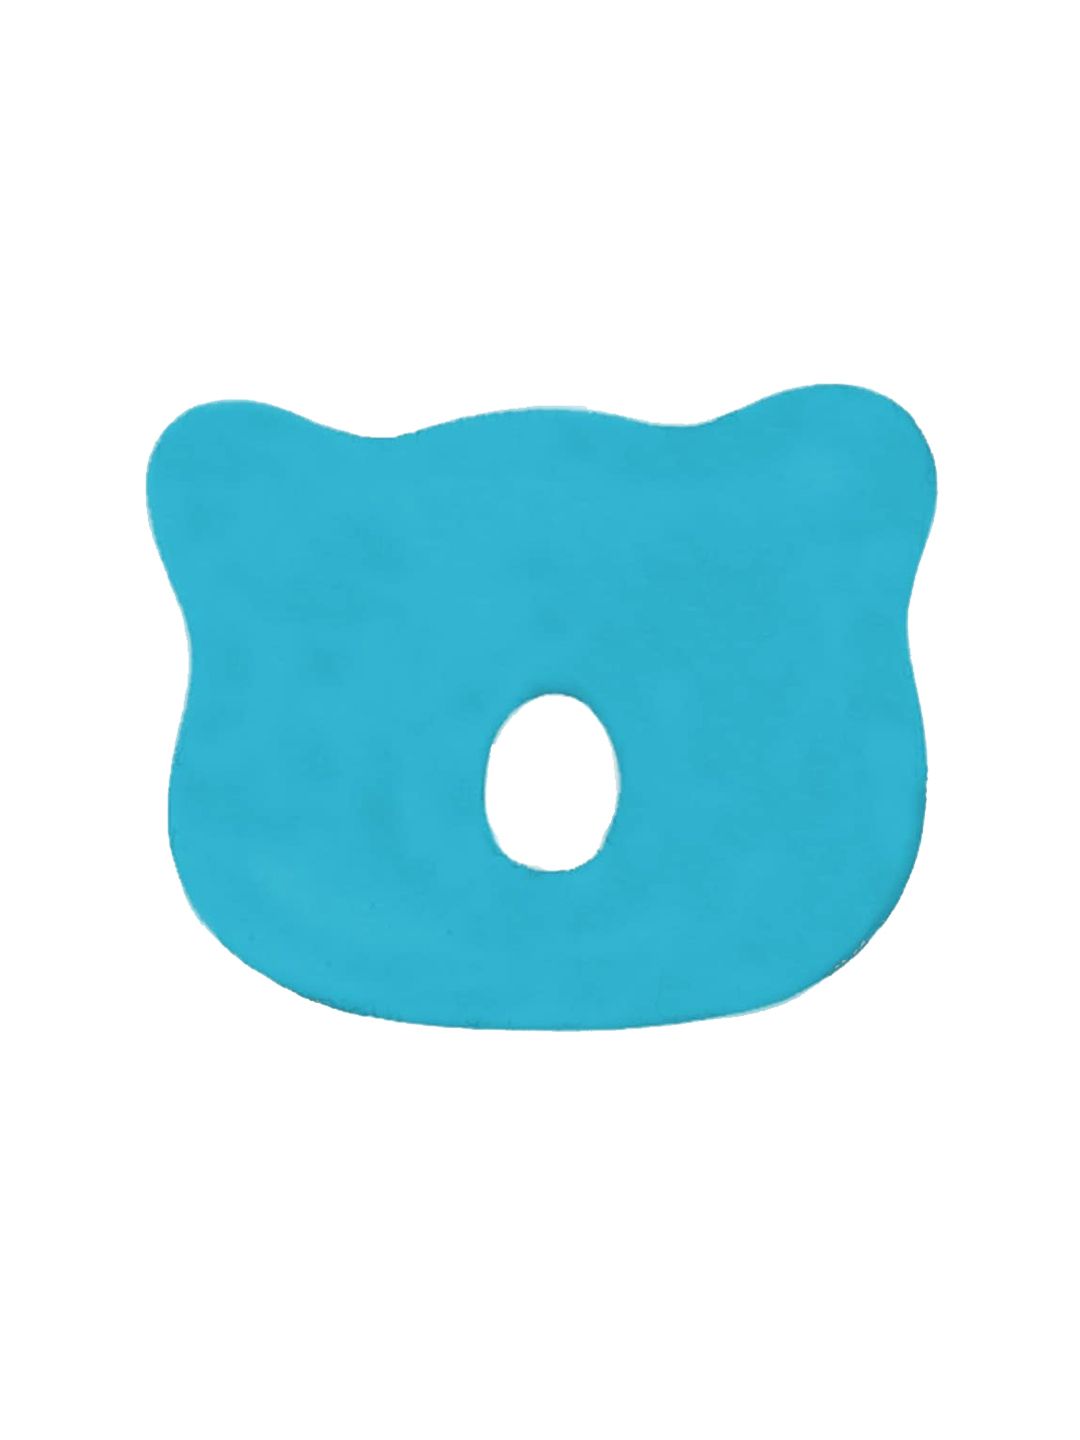 Pum Pum Blue Solid Pillow Price in India